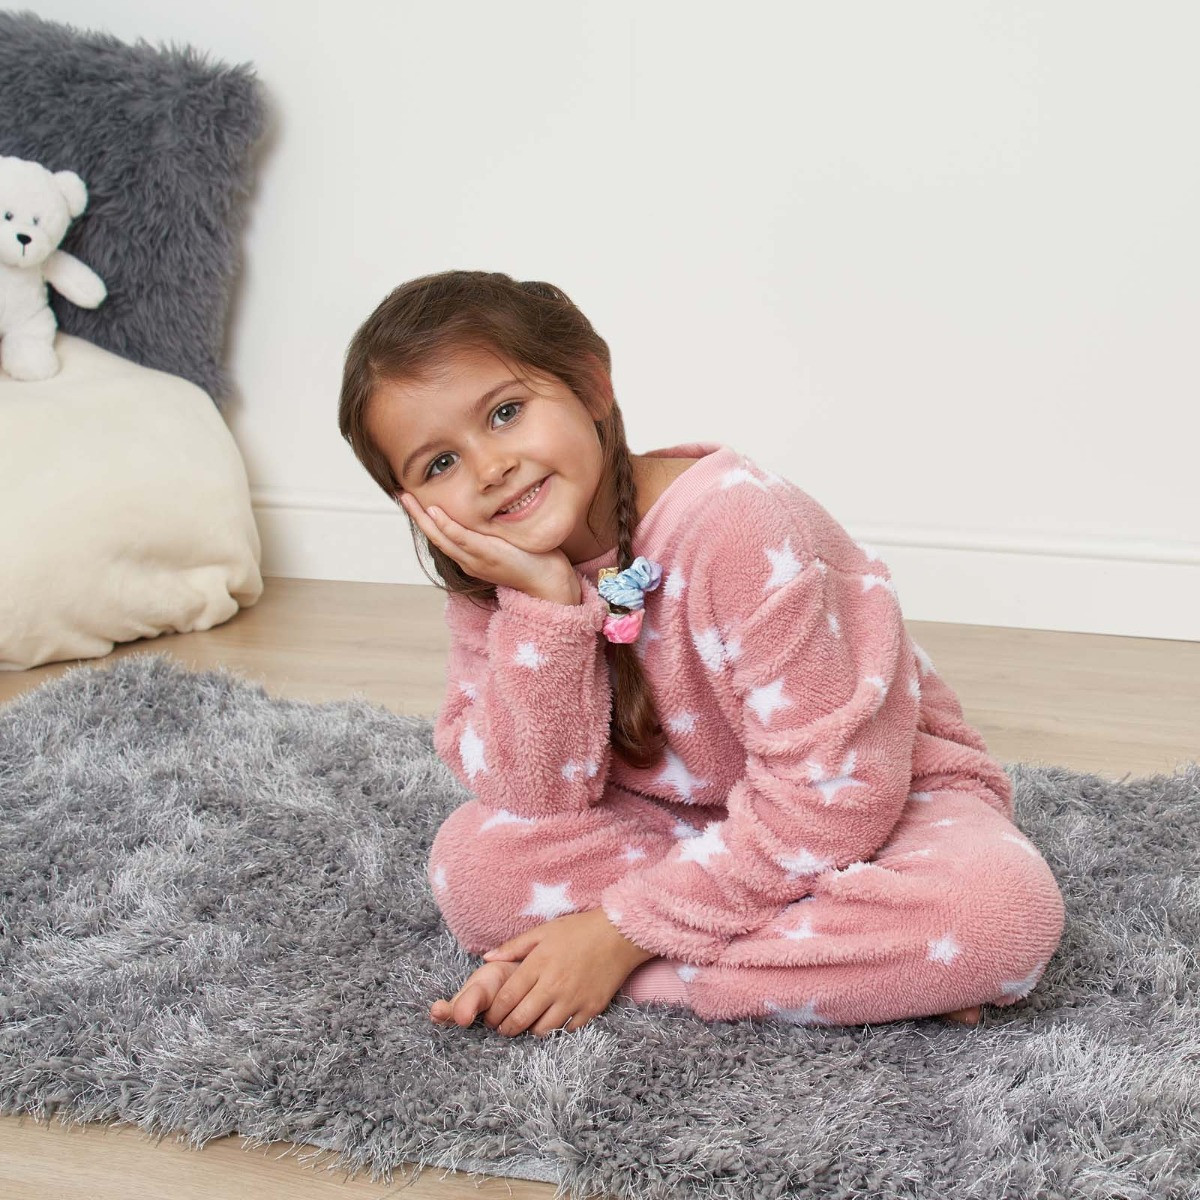 Dreamscene Kids Star Print Fleece Pyjama Set - Blush>